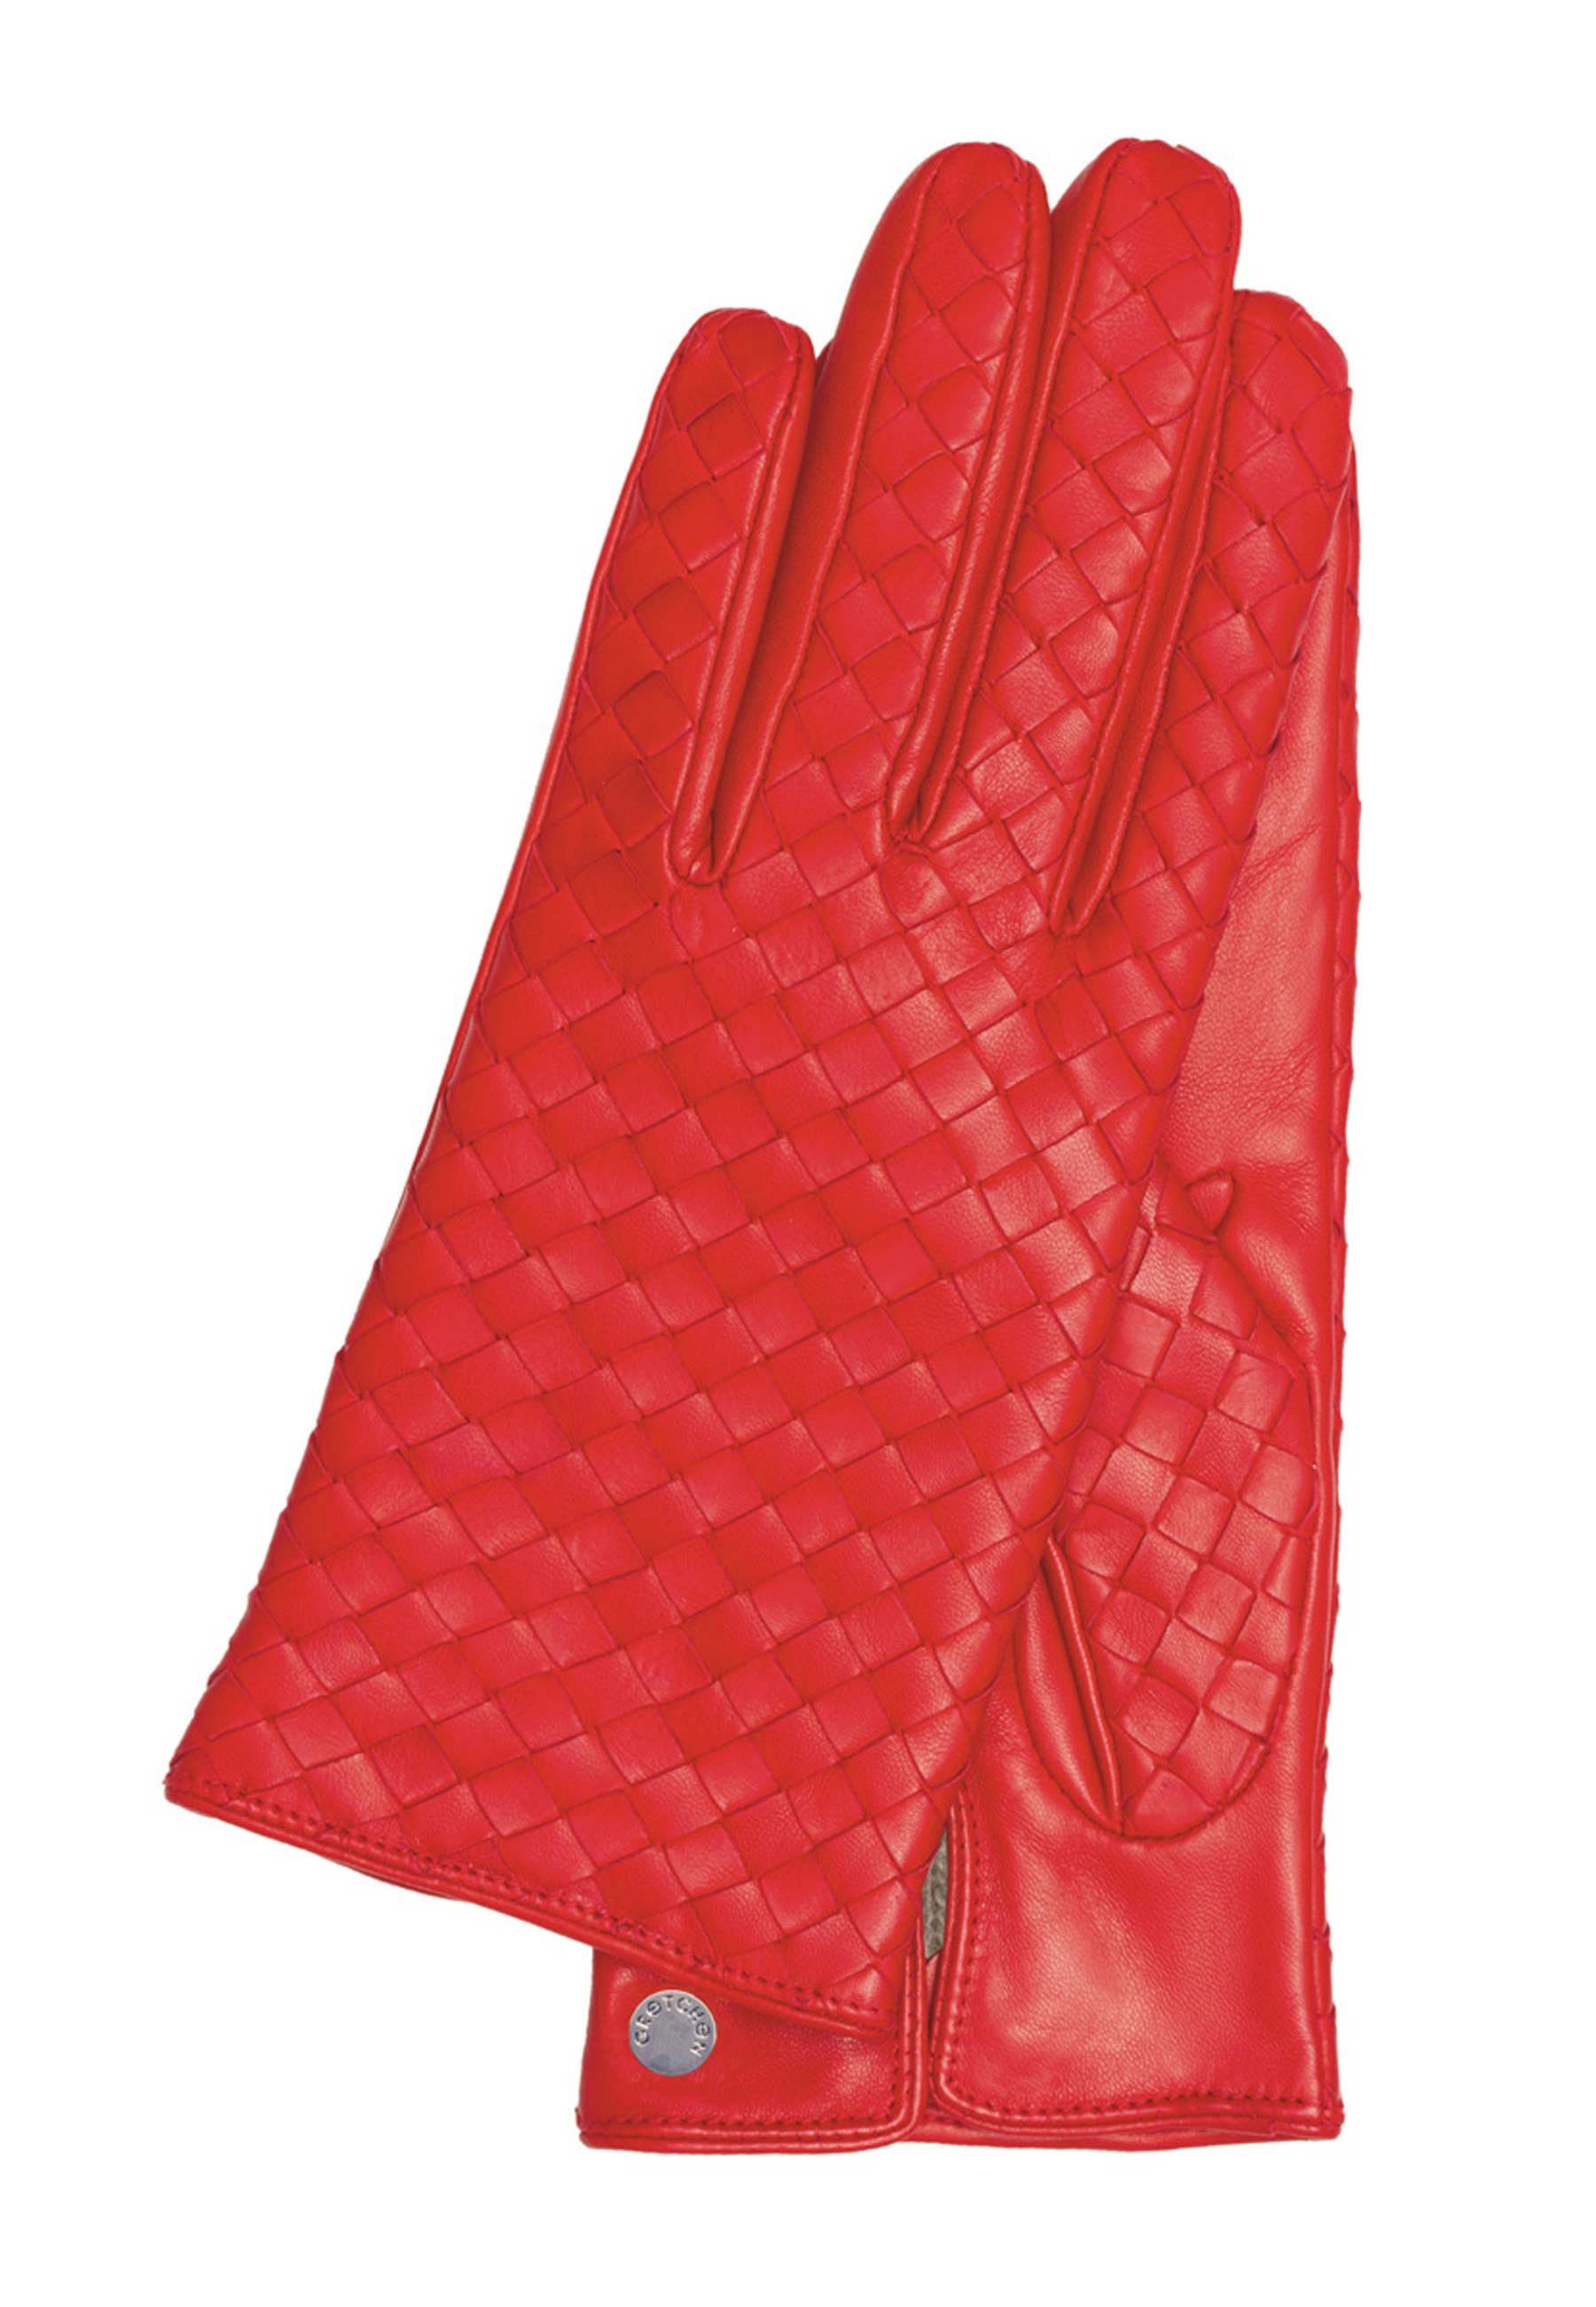 GRETCHEN Lederhandschuhe Gloves mit trendiger rot Woven Flechtung